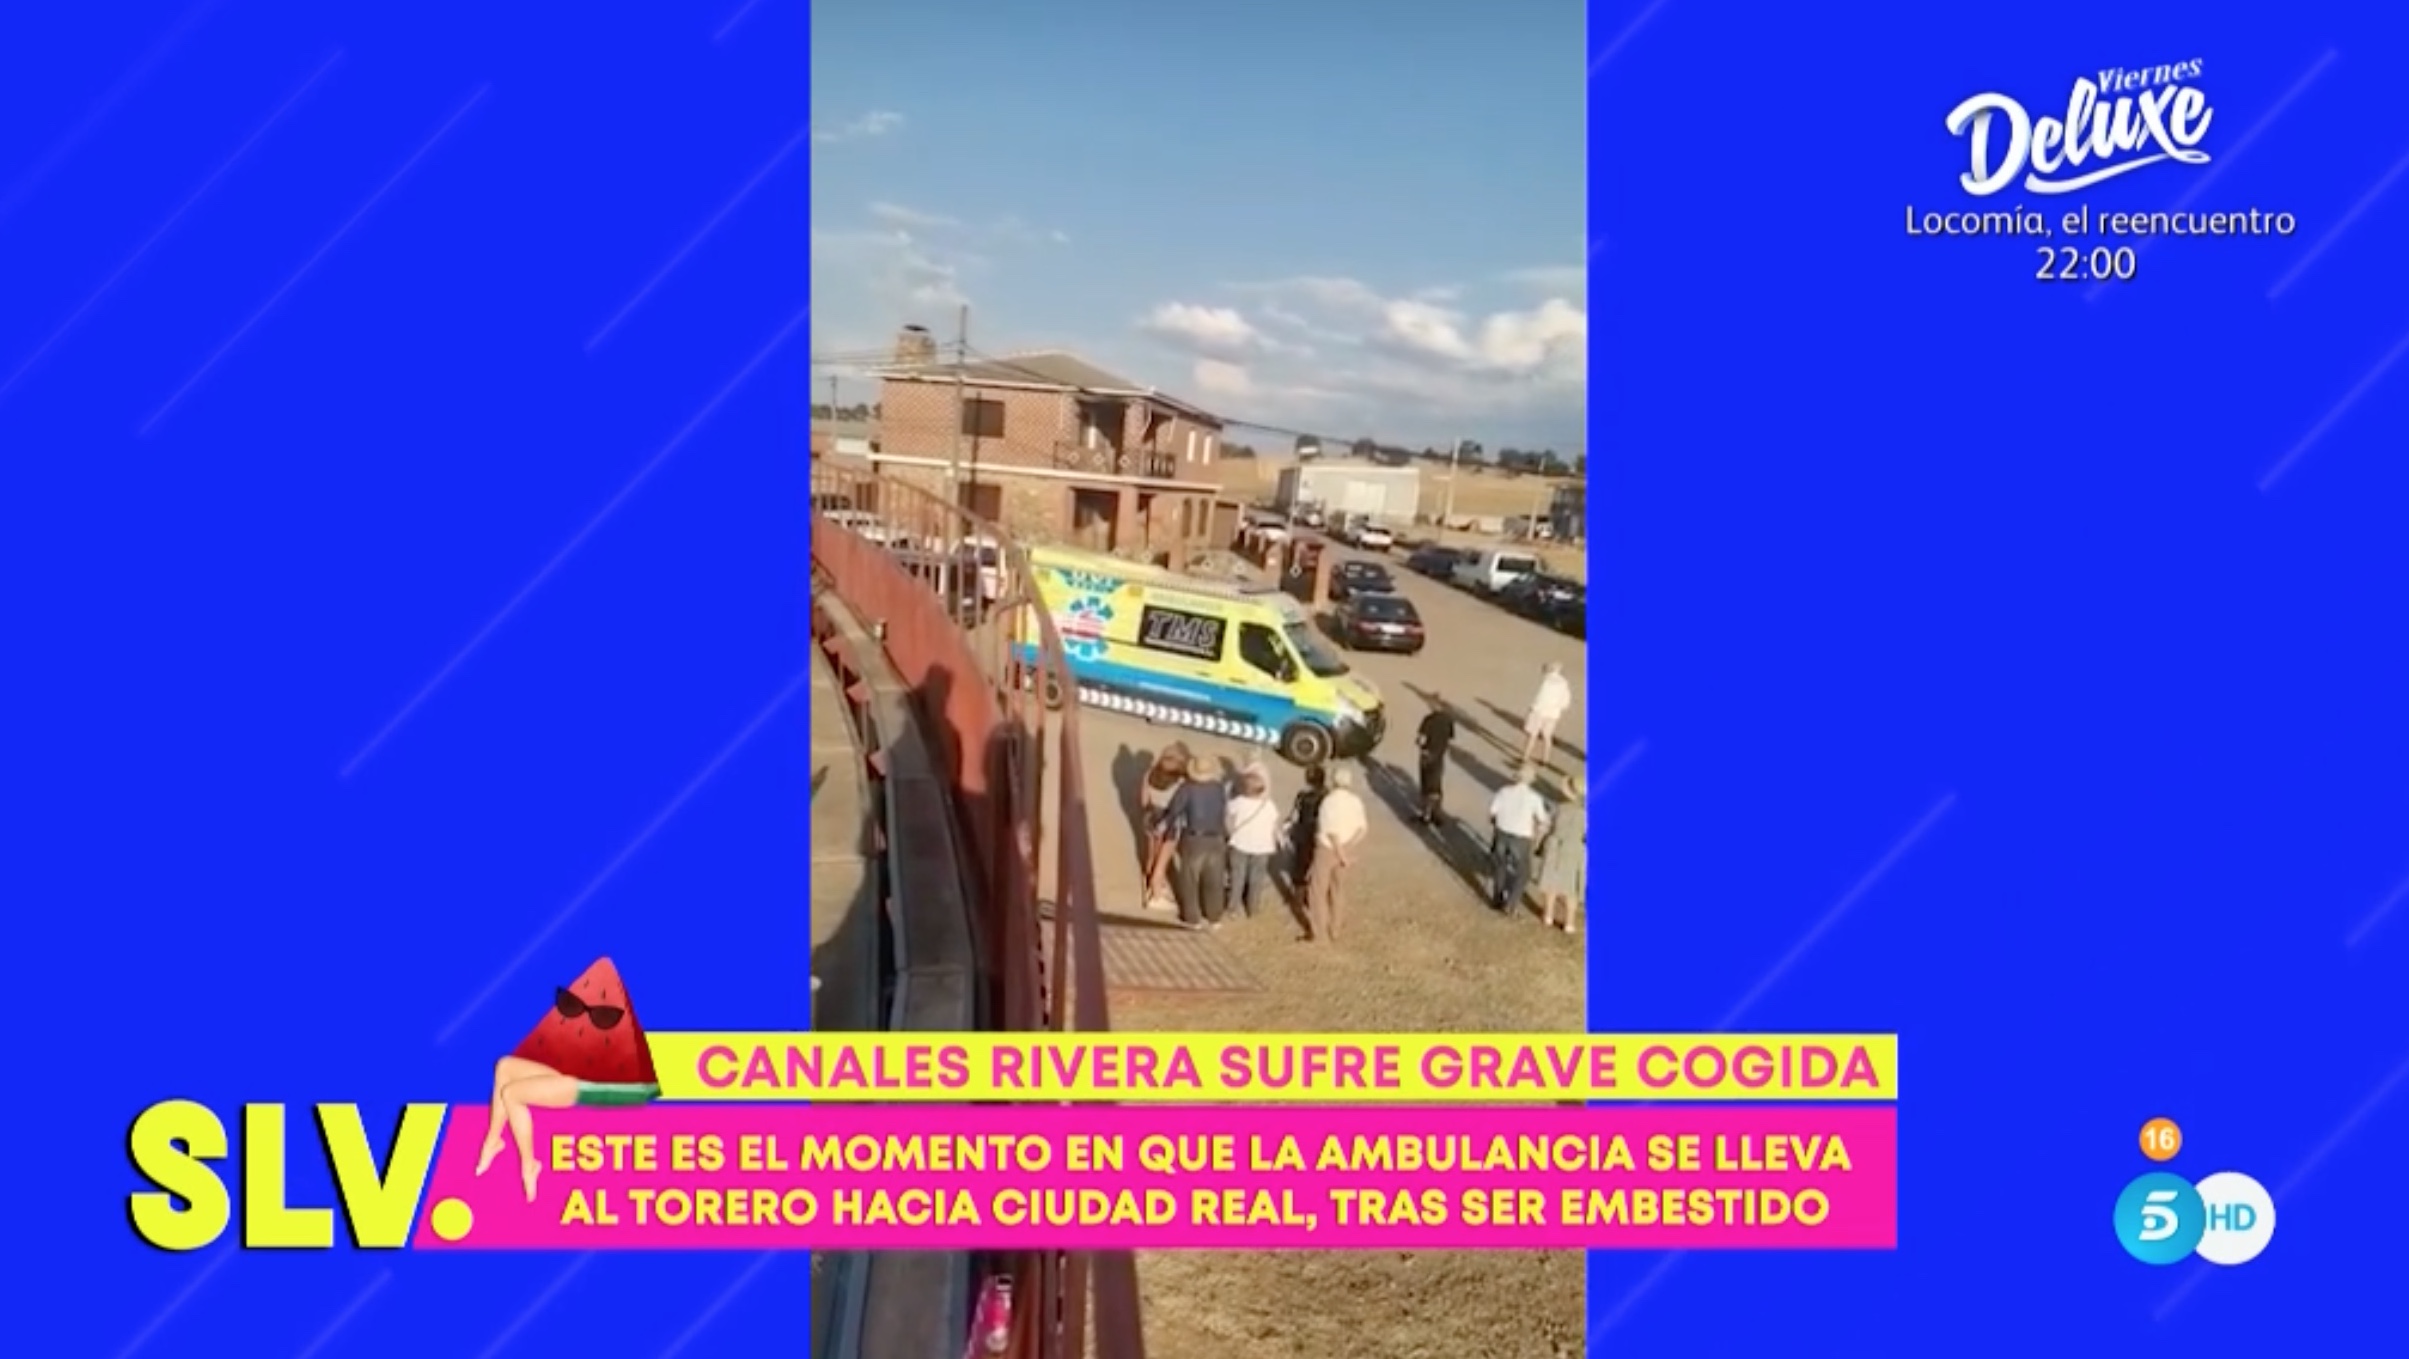 La ambulancia en la que ha sido evacuado Canales Rivera